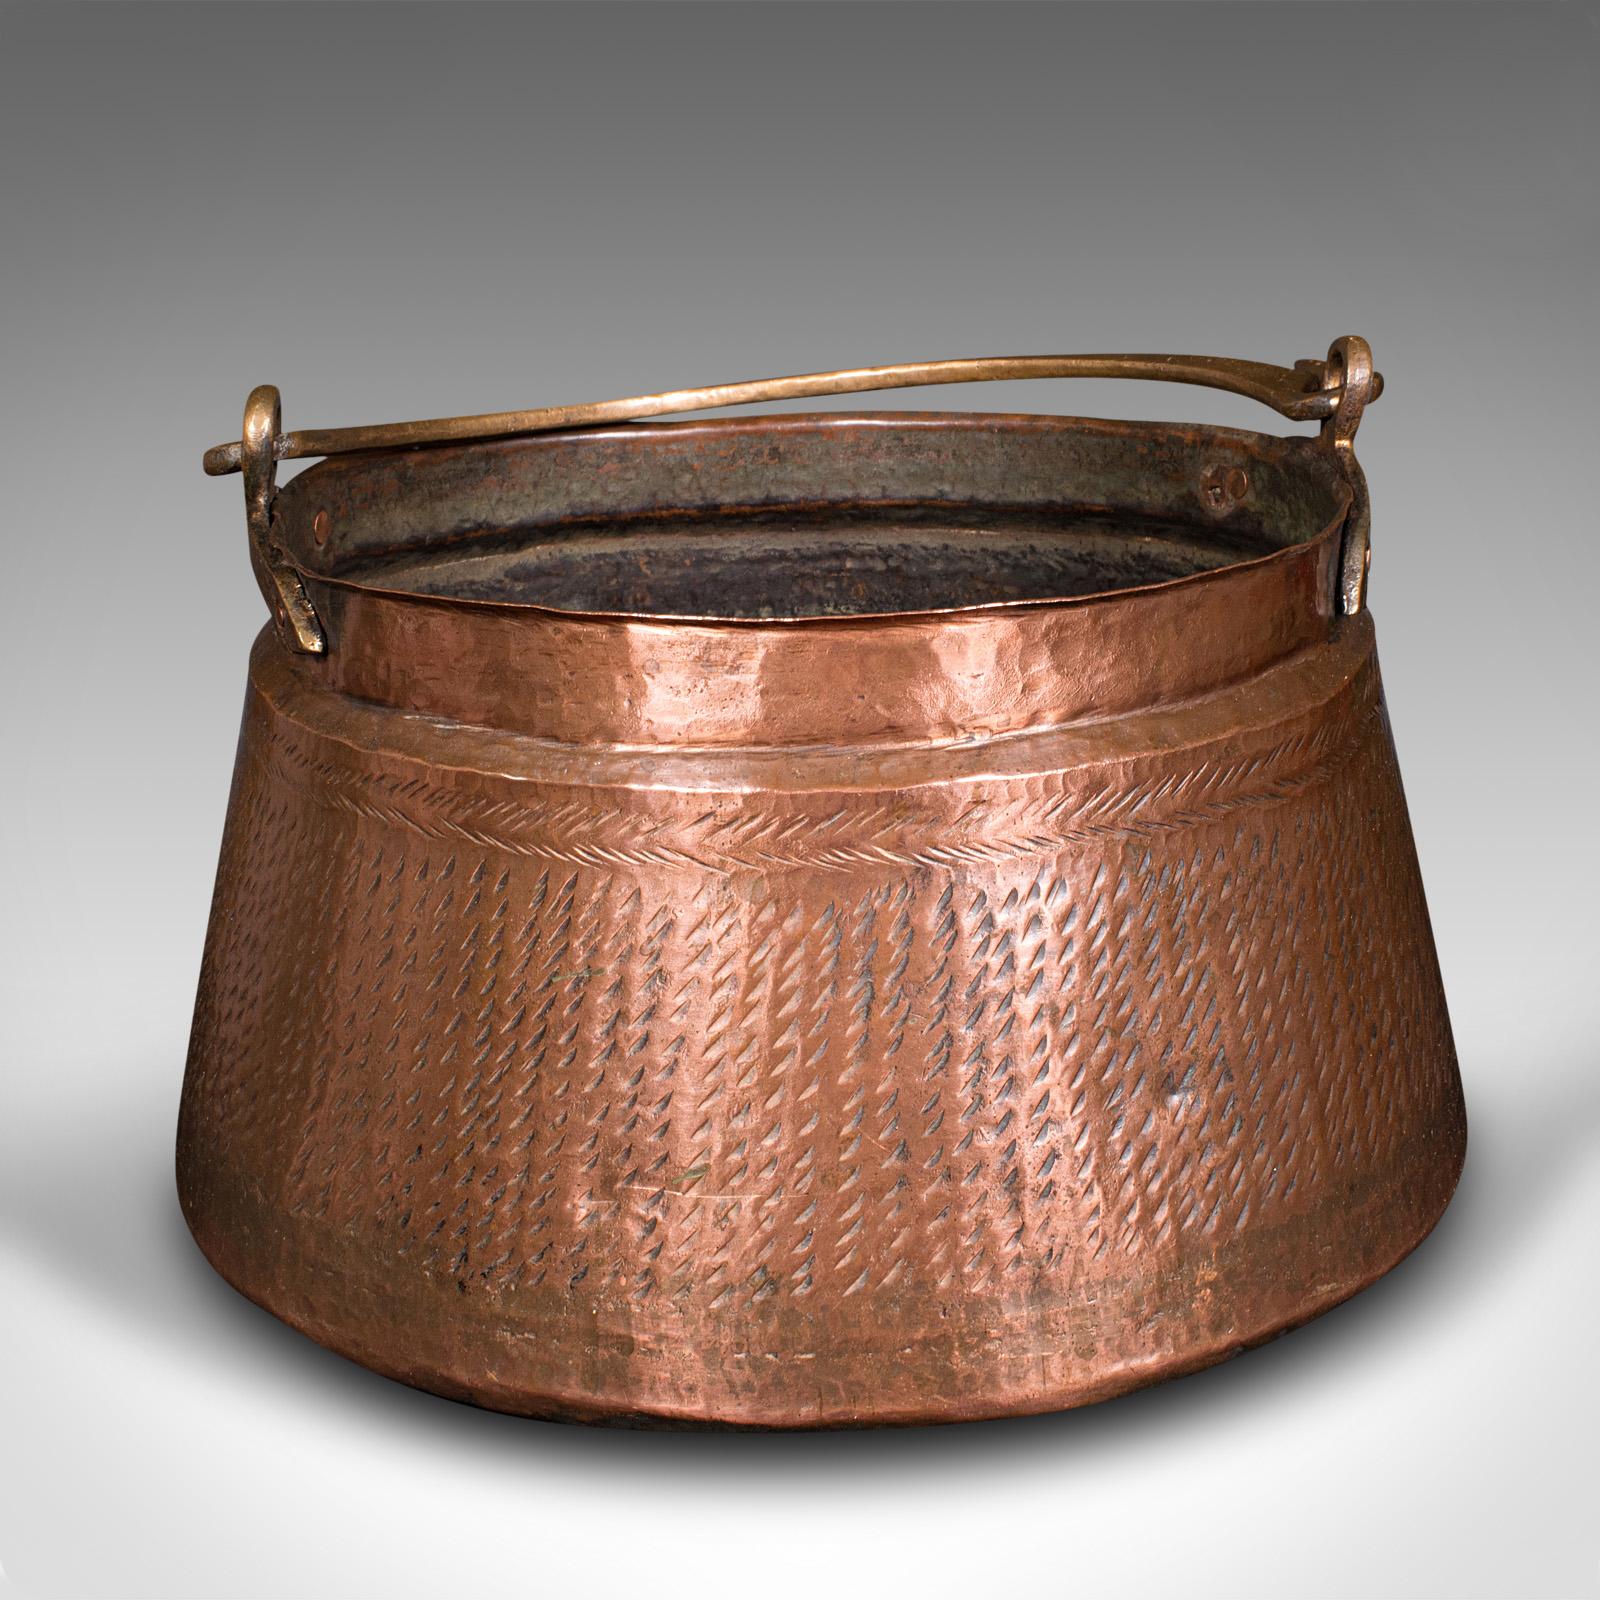 Il s'agit d'un ancien panier à combustible pour cheminée. Pot à daal indien en cuivre et bronze, datant du début de la période victorienne, vers 1850.

Poêle originale et attrayante, idéale pour le rangement au coin du feu
Présente une patine